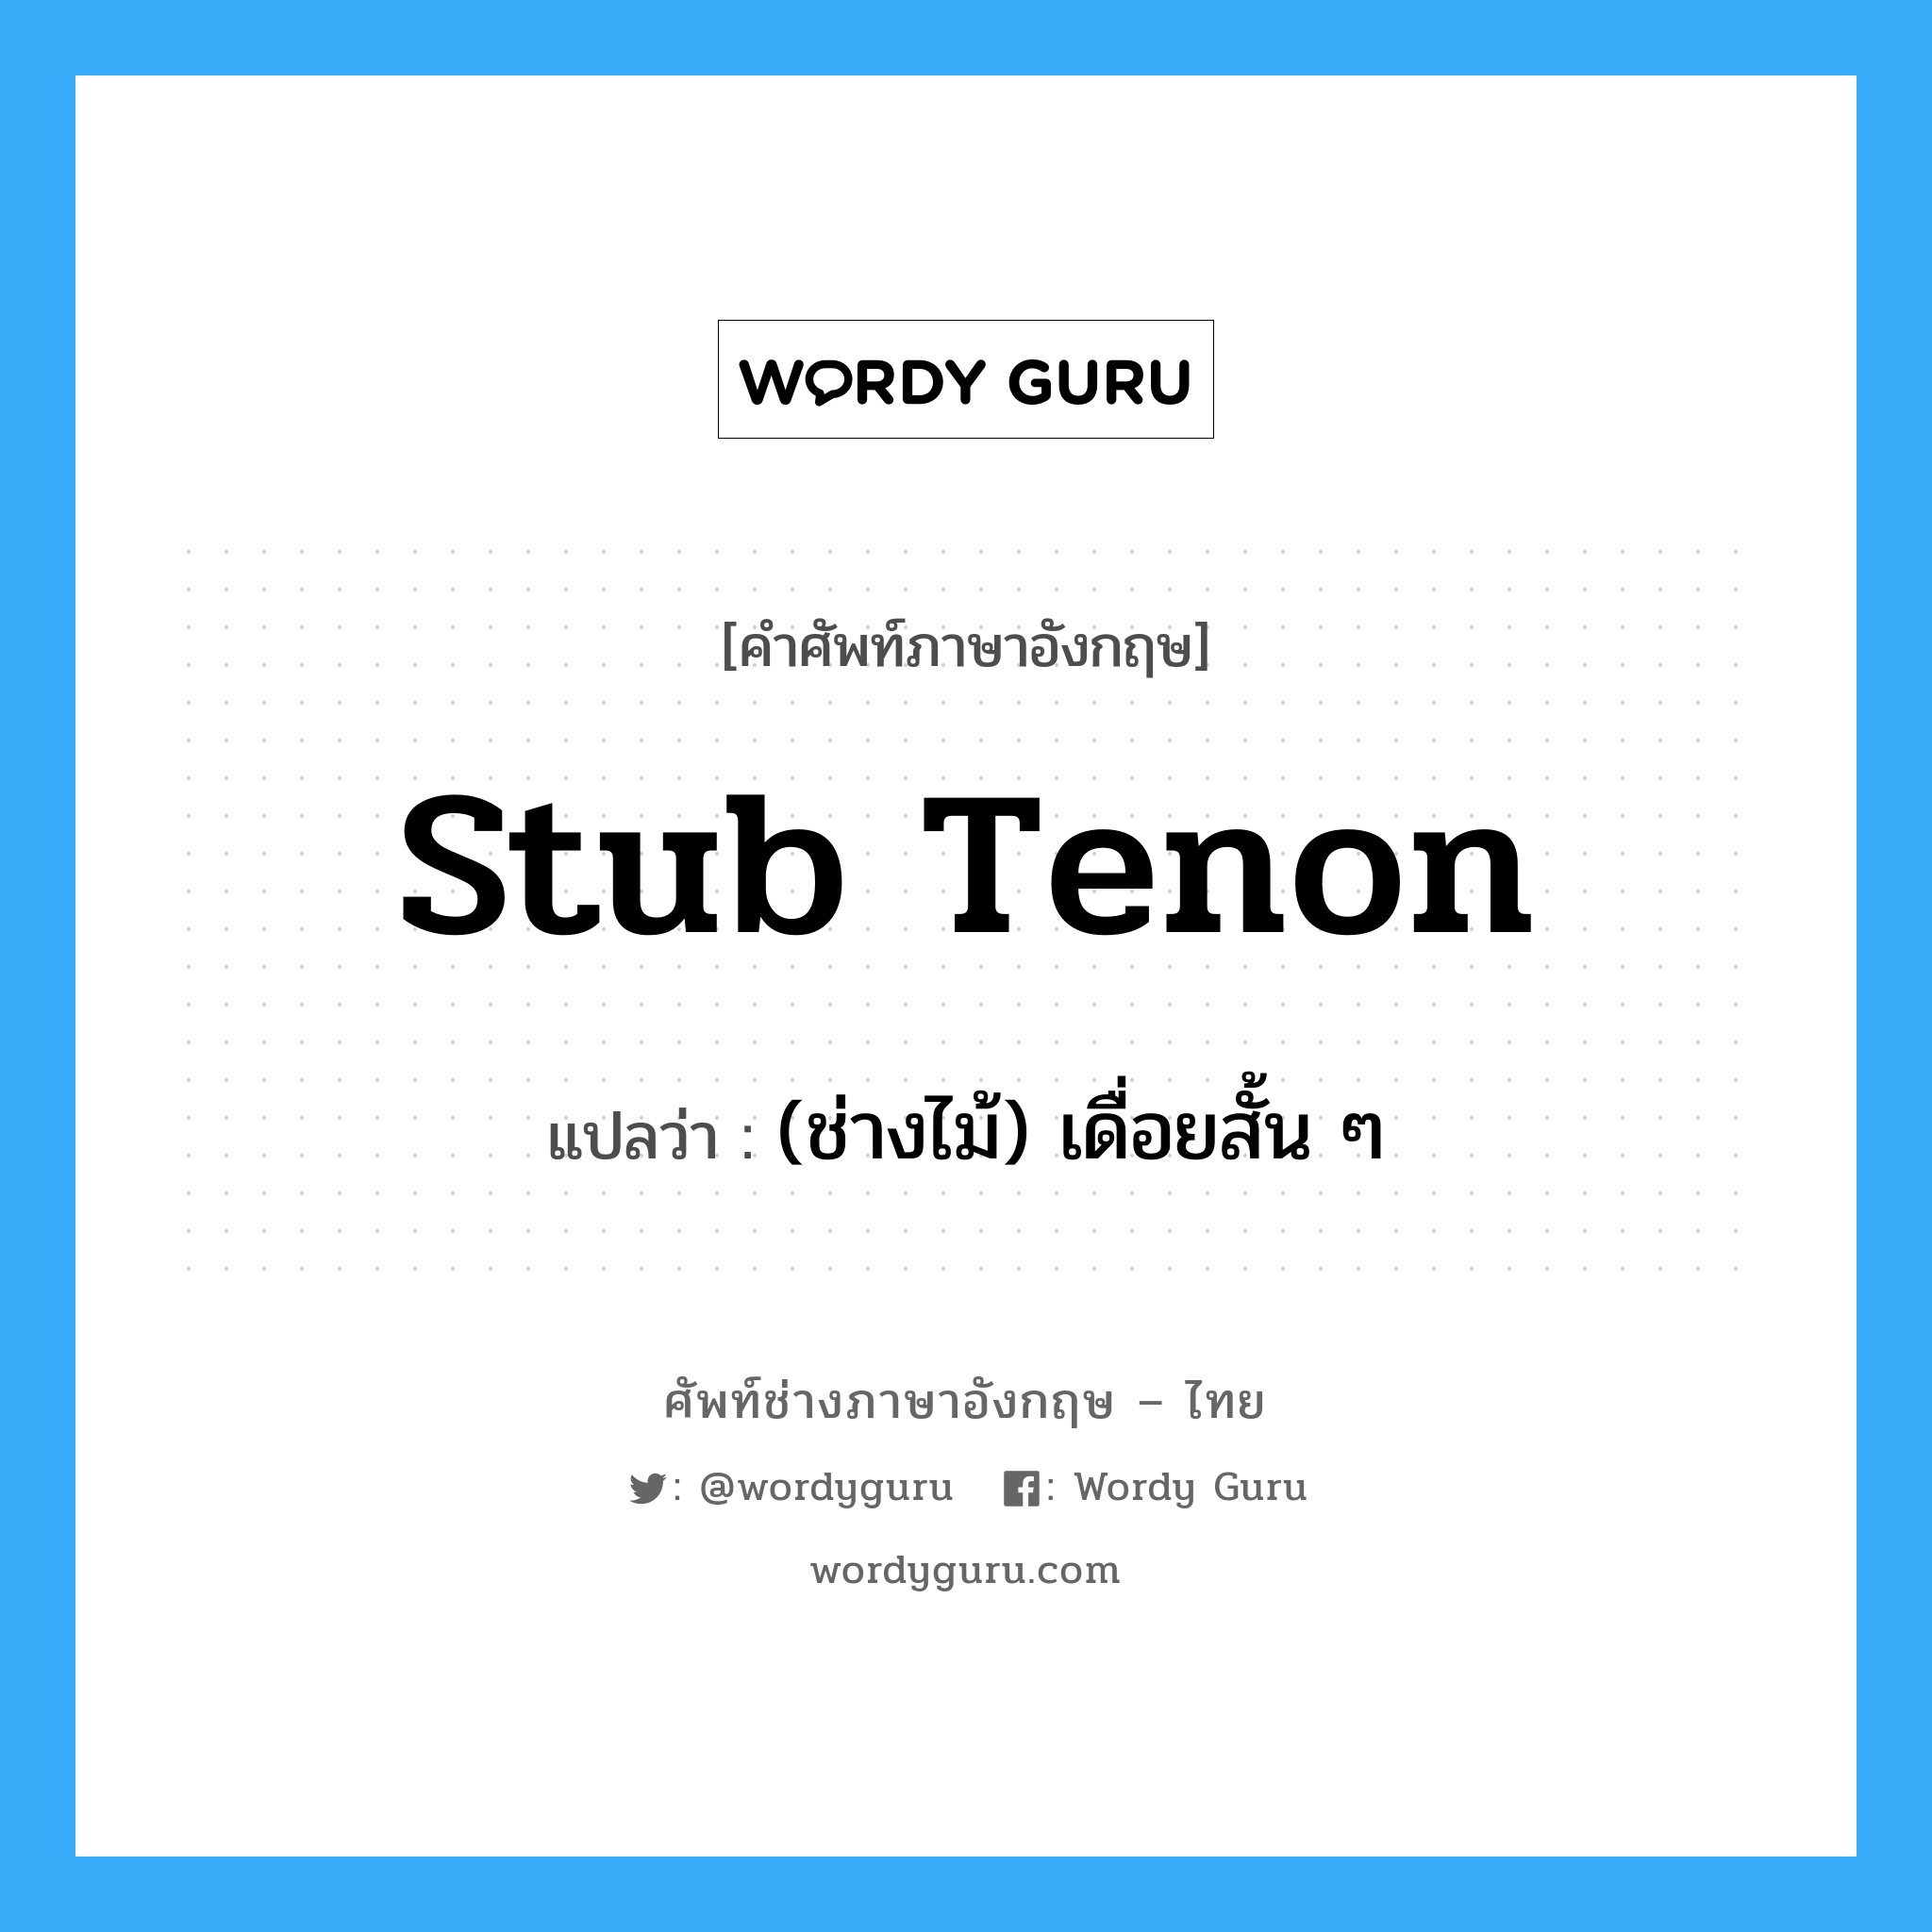 (ช่างไม้) เดื่อยสั้น ๆ ภาษาอังกฤษ?, คำศัพท์ช่างภาษาอังกฤษ - ไทย (ช่างไม้) เดื่อยสั้น ๆ คำศัพท์ภาษาอังกฤษ (ช่างไม้) เดื่อยสั้น ๆ แปลว่า stub tenon